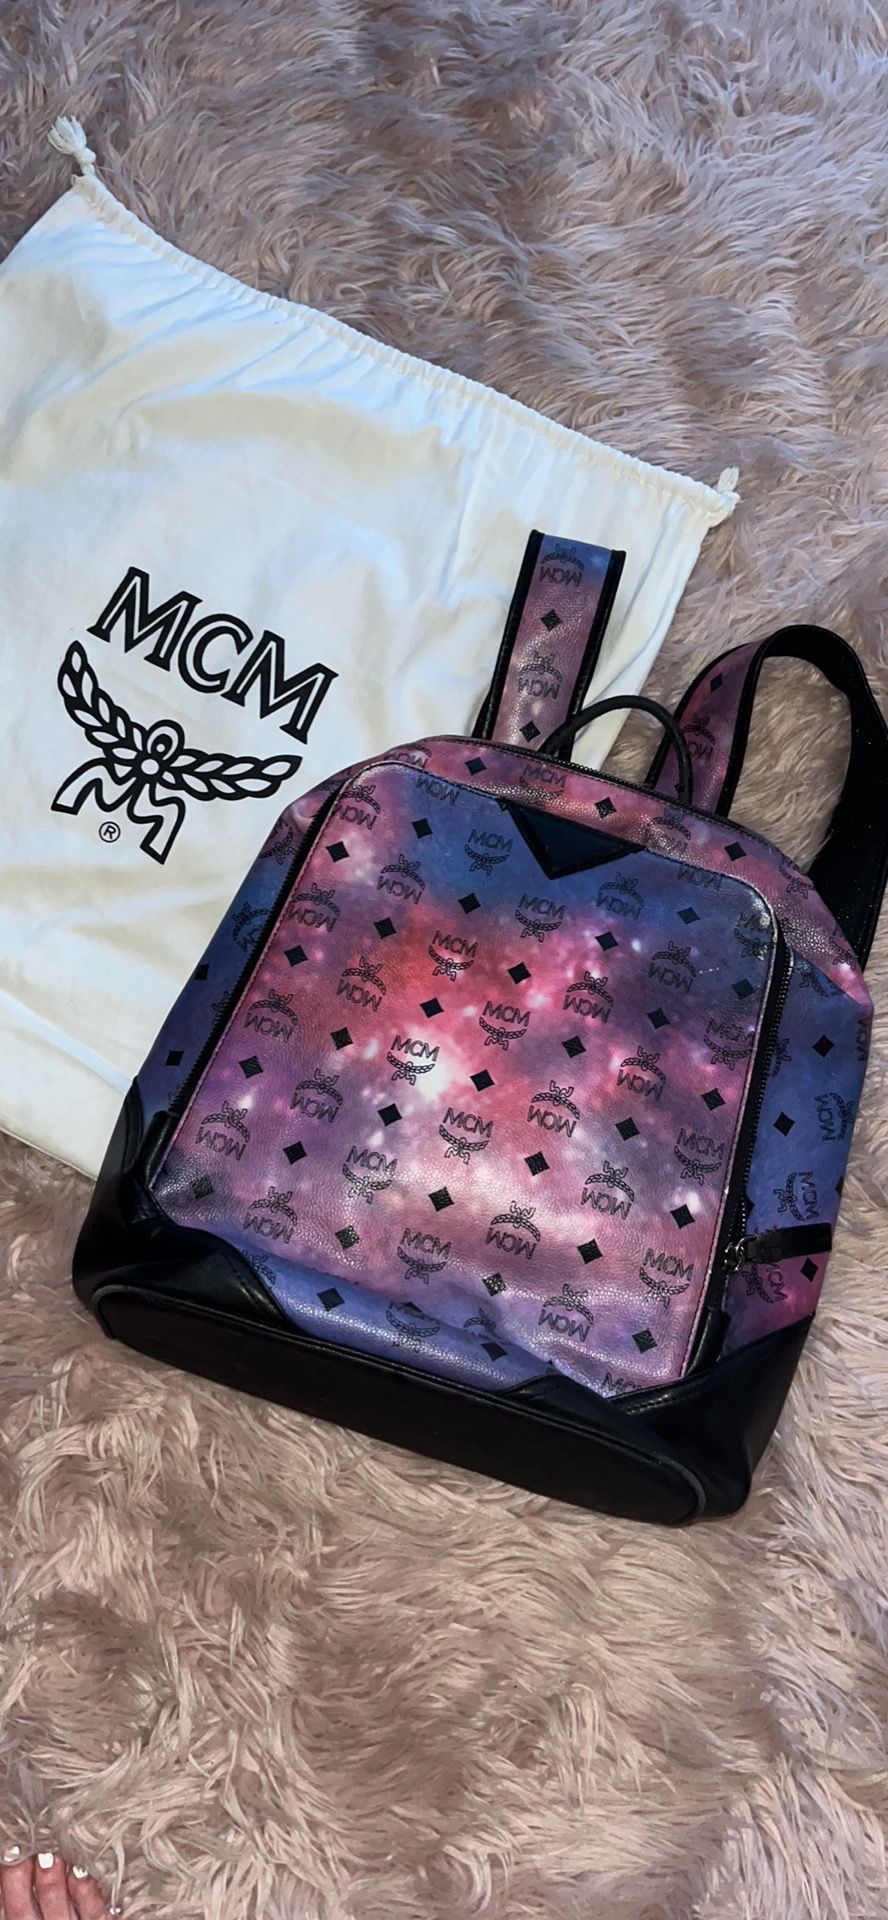 MCM Studded Backpack for Sale in Glendora, NJ - OfferUp